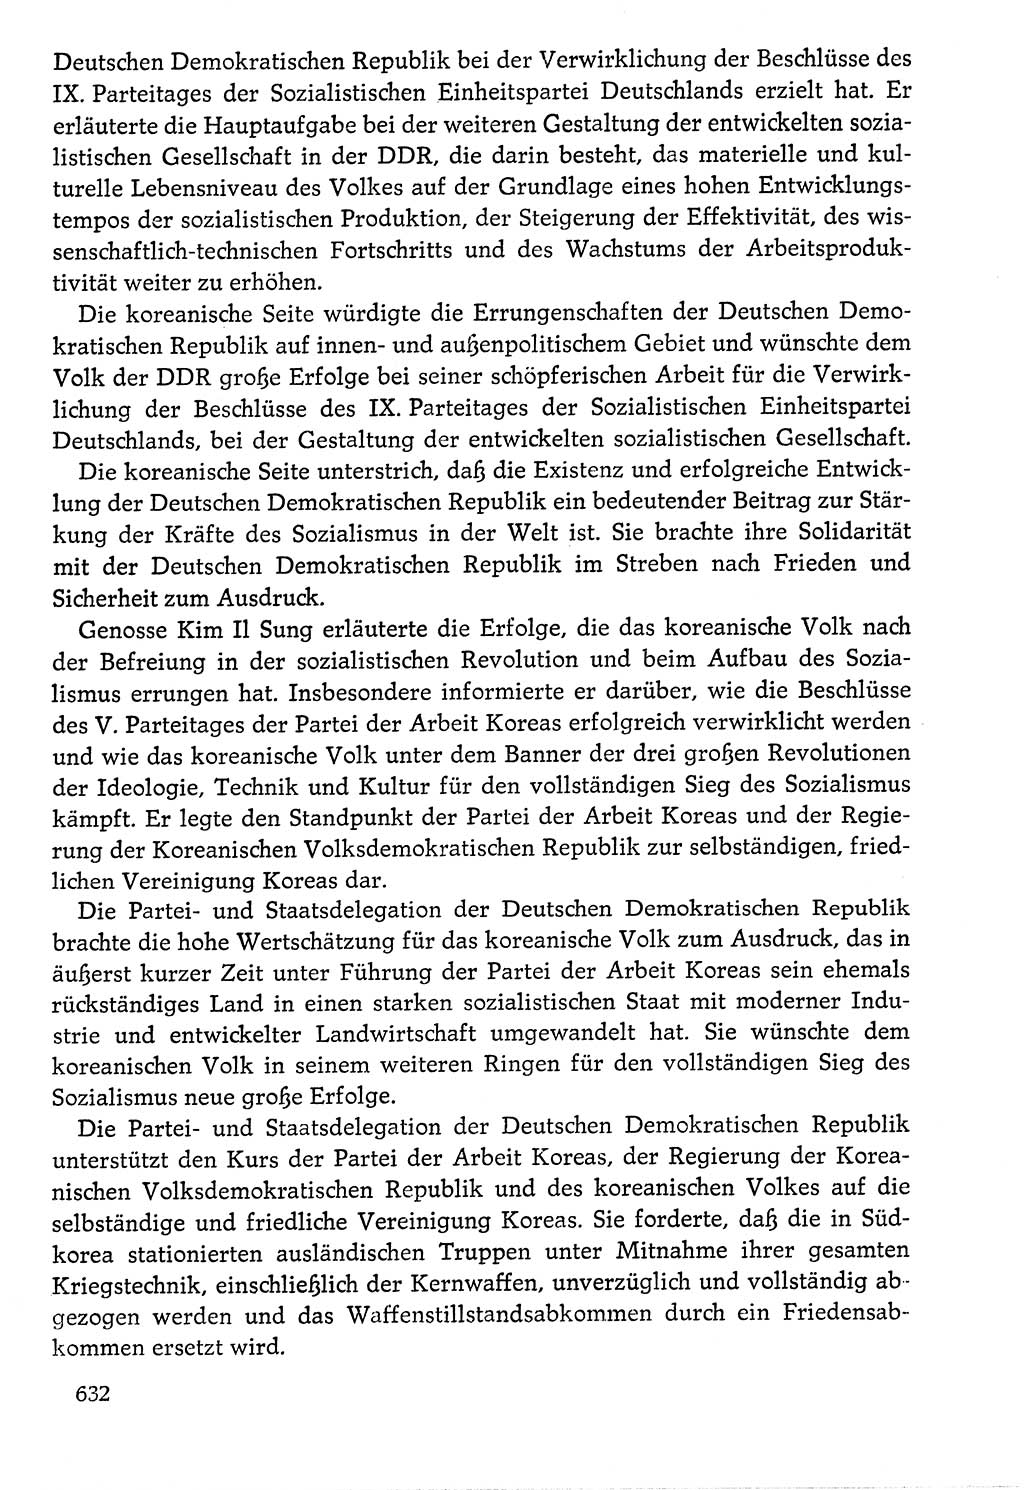 Dokumente der Sozialistischen Einheitspartei Deutschlands (SED) [Deutsche Demokratische Republik (DDR)] 1976-1977, Seite 632 (Dok. SED DDR 1976-1977, S. 632)